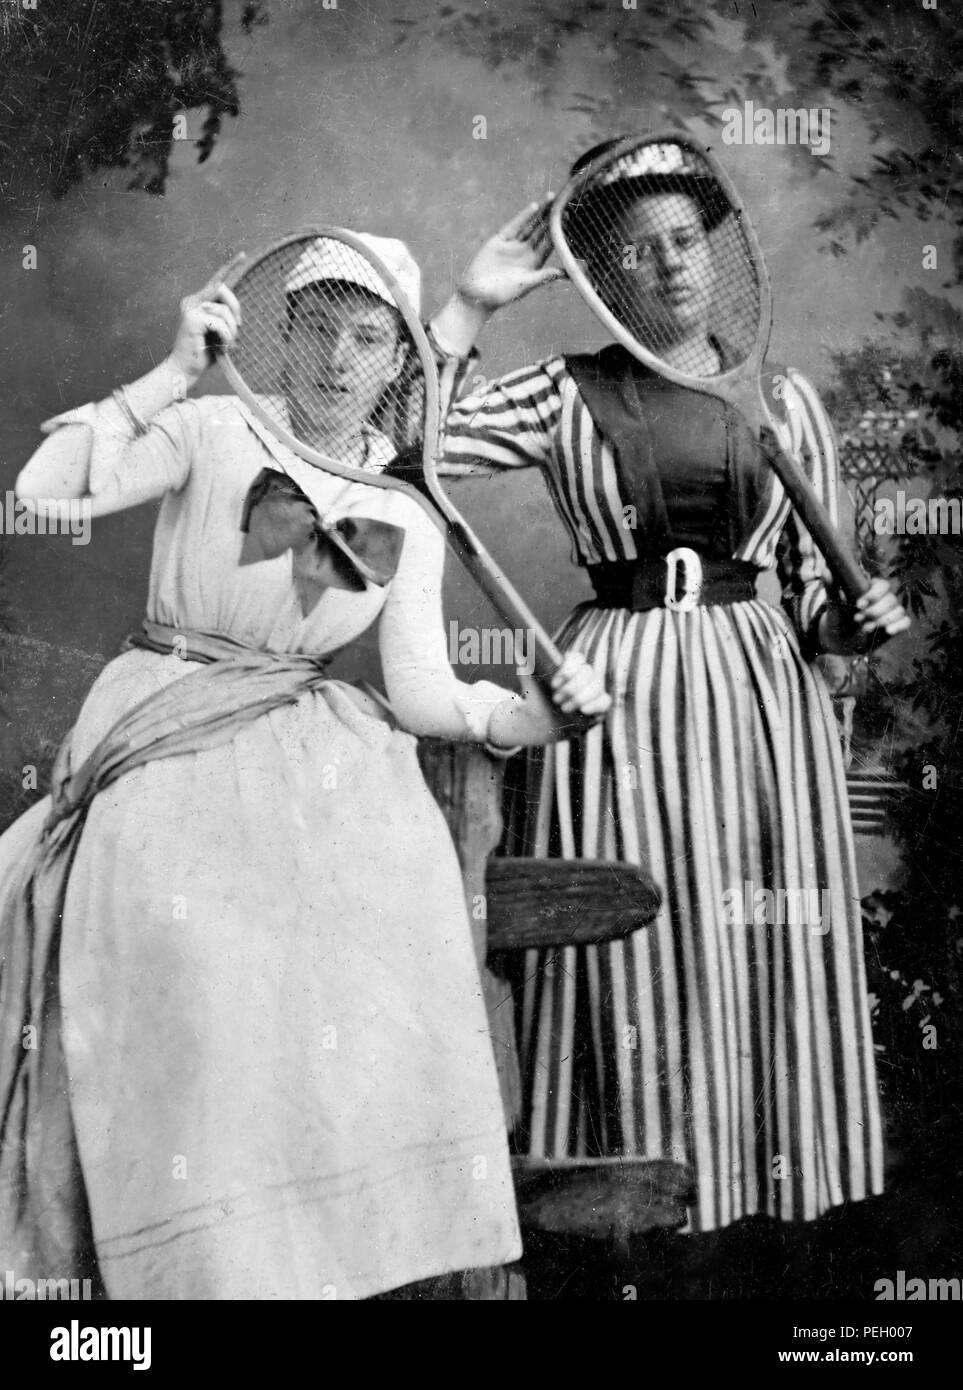 Dos mujeres en ropa deportiva alegremente posan con sus raquetas de tenis  en una imagen tintype de finales del siglo XIX, ca. 1890 Fotografía de  stock - Alamy